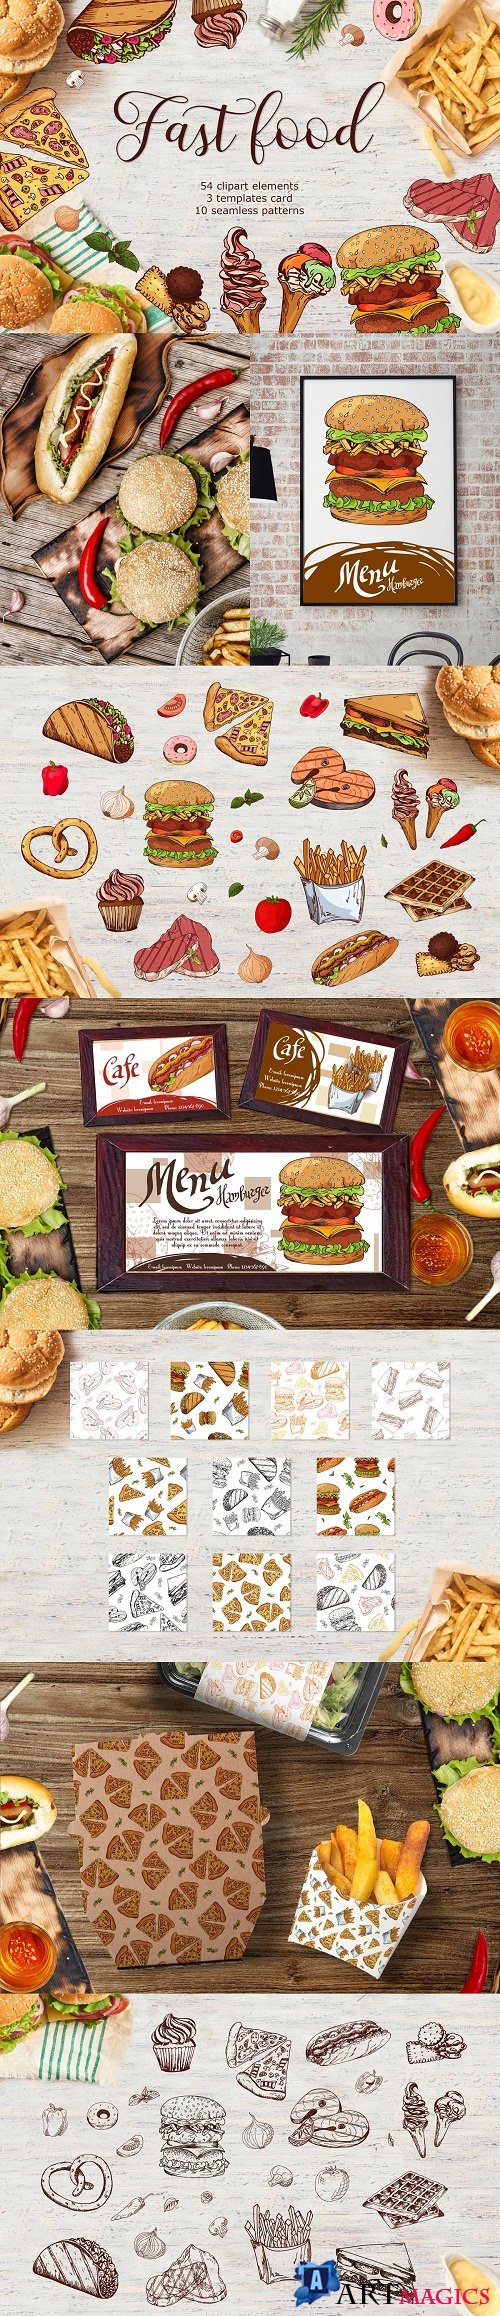 Fast Food-clipart+menu - 3590186